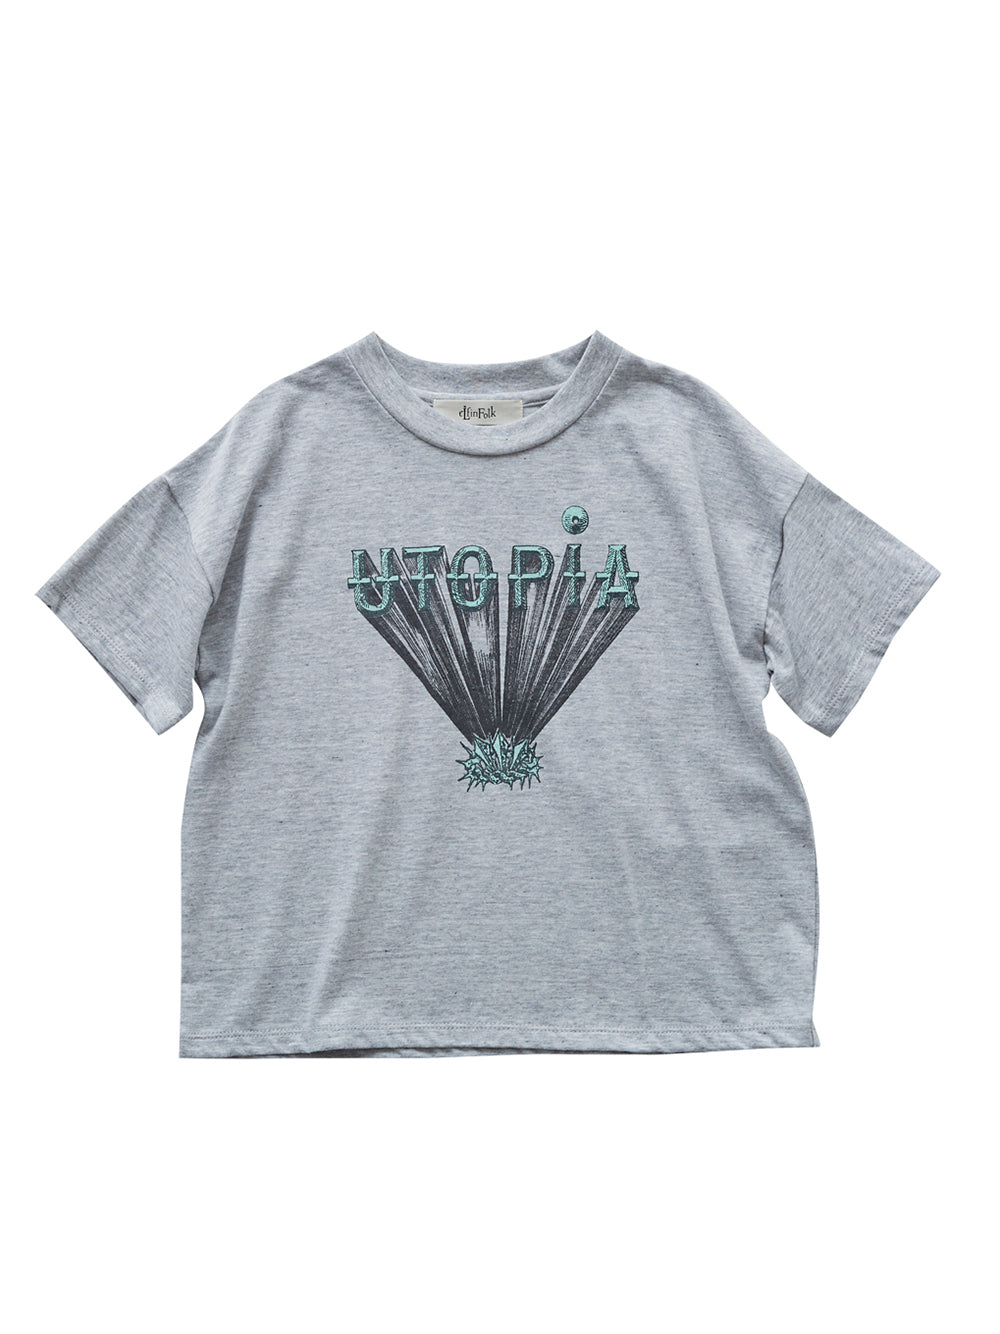 Utopia T-Shirt